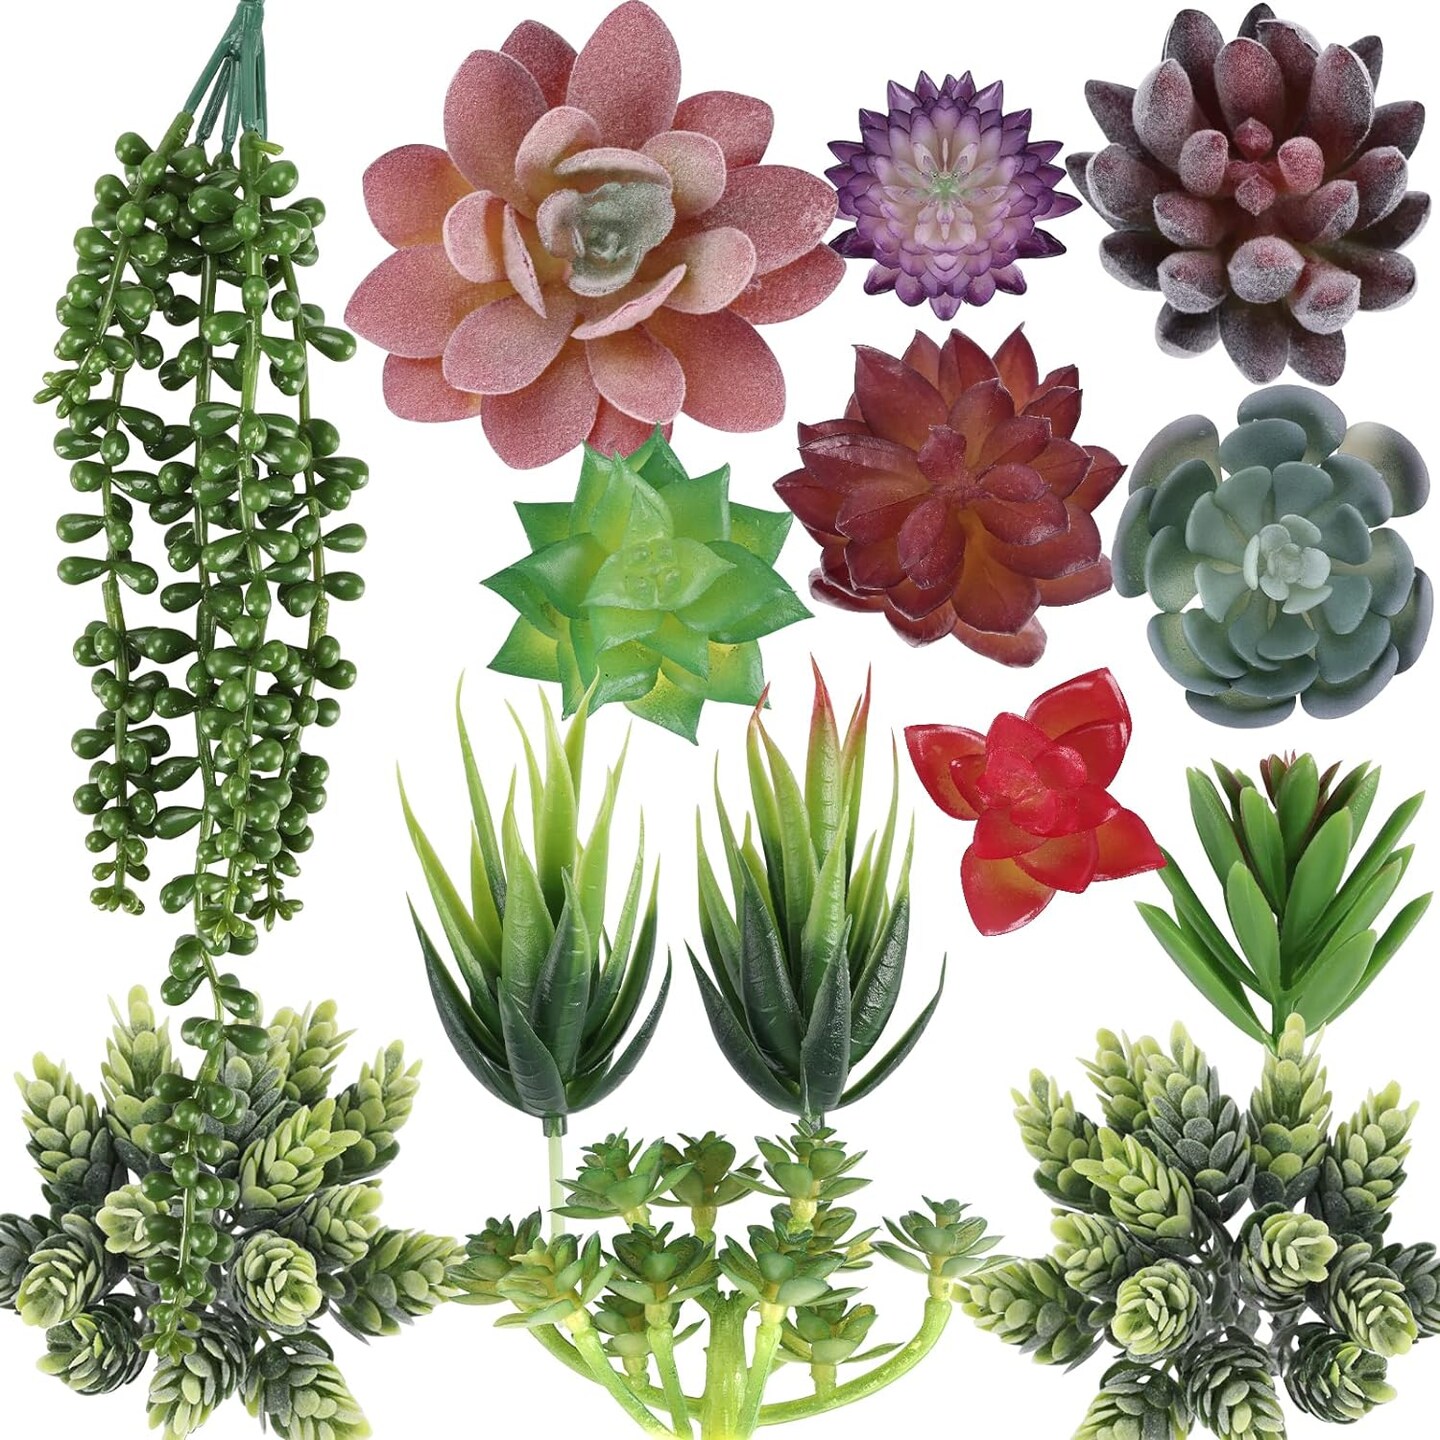 Realistic Succulent Plants for Home Decorations 14 pcs